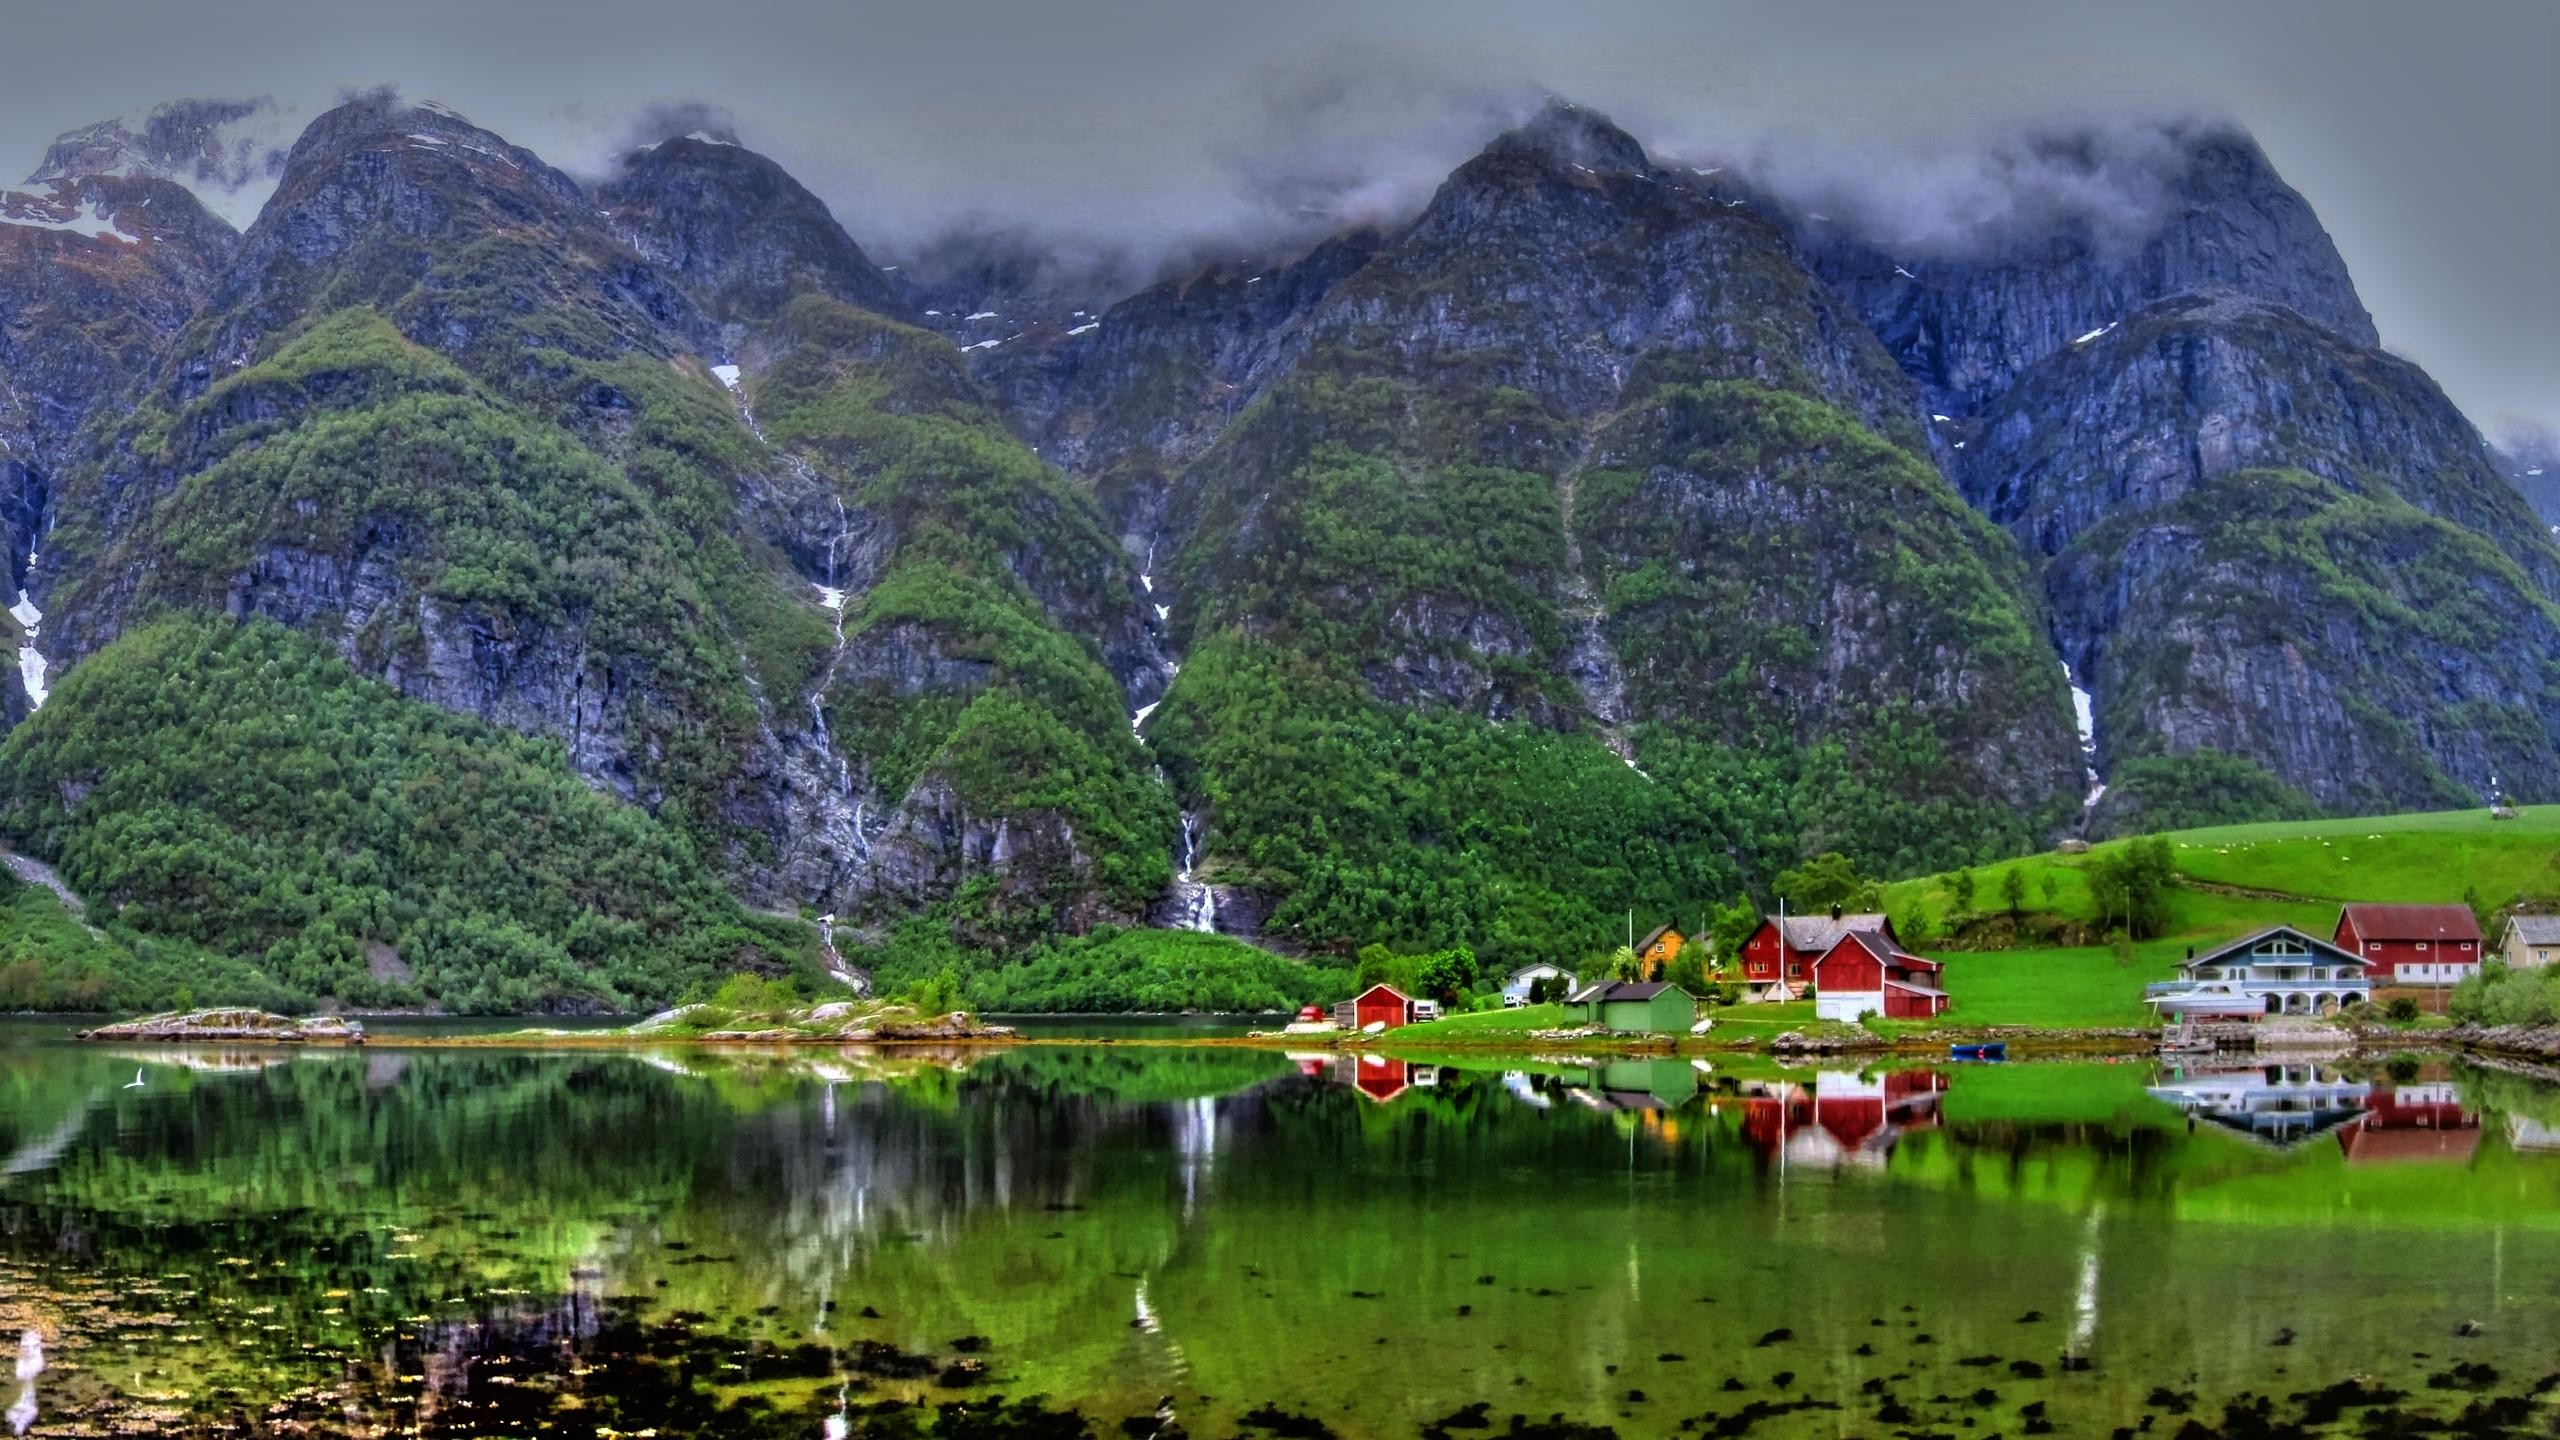 2560x1440 37 Desktop Images Of Norway | Norway Wallpapers